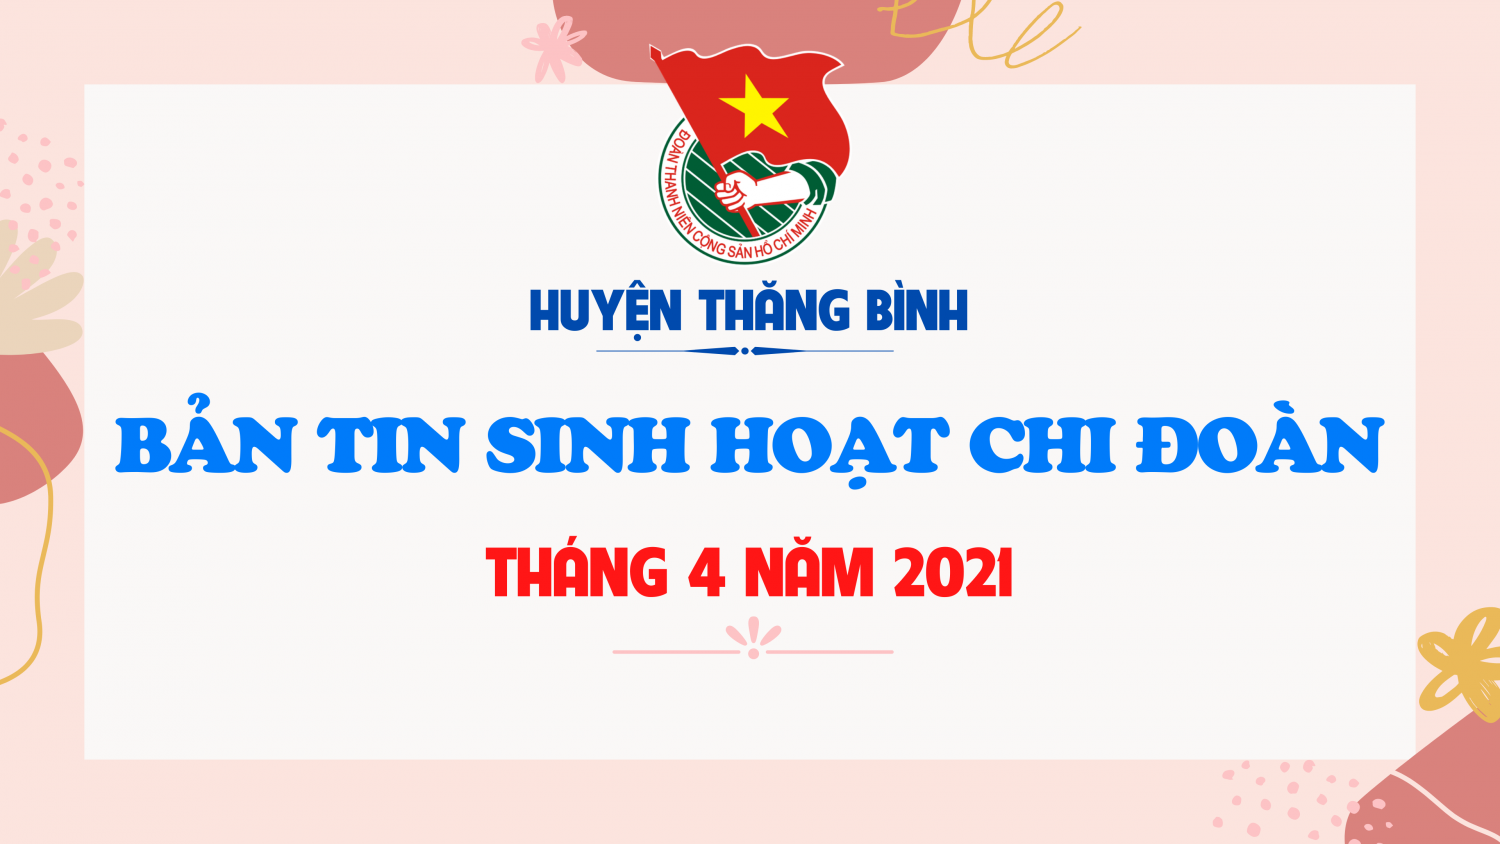 BẢN TIN SINH HOẠT CHI ĐOÀN THÁNG 4 NĂM 2021